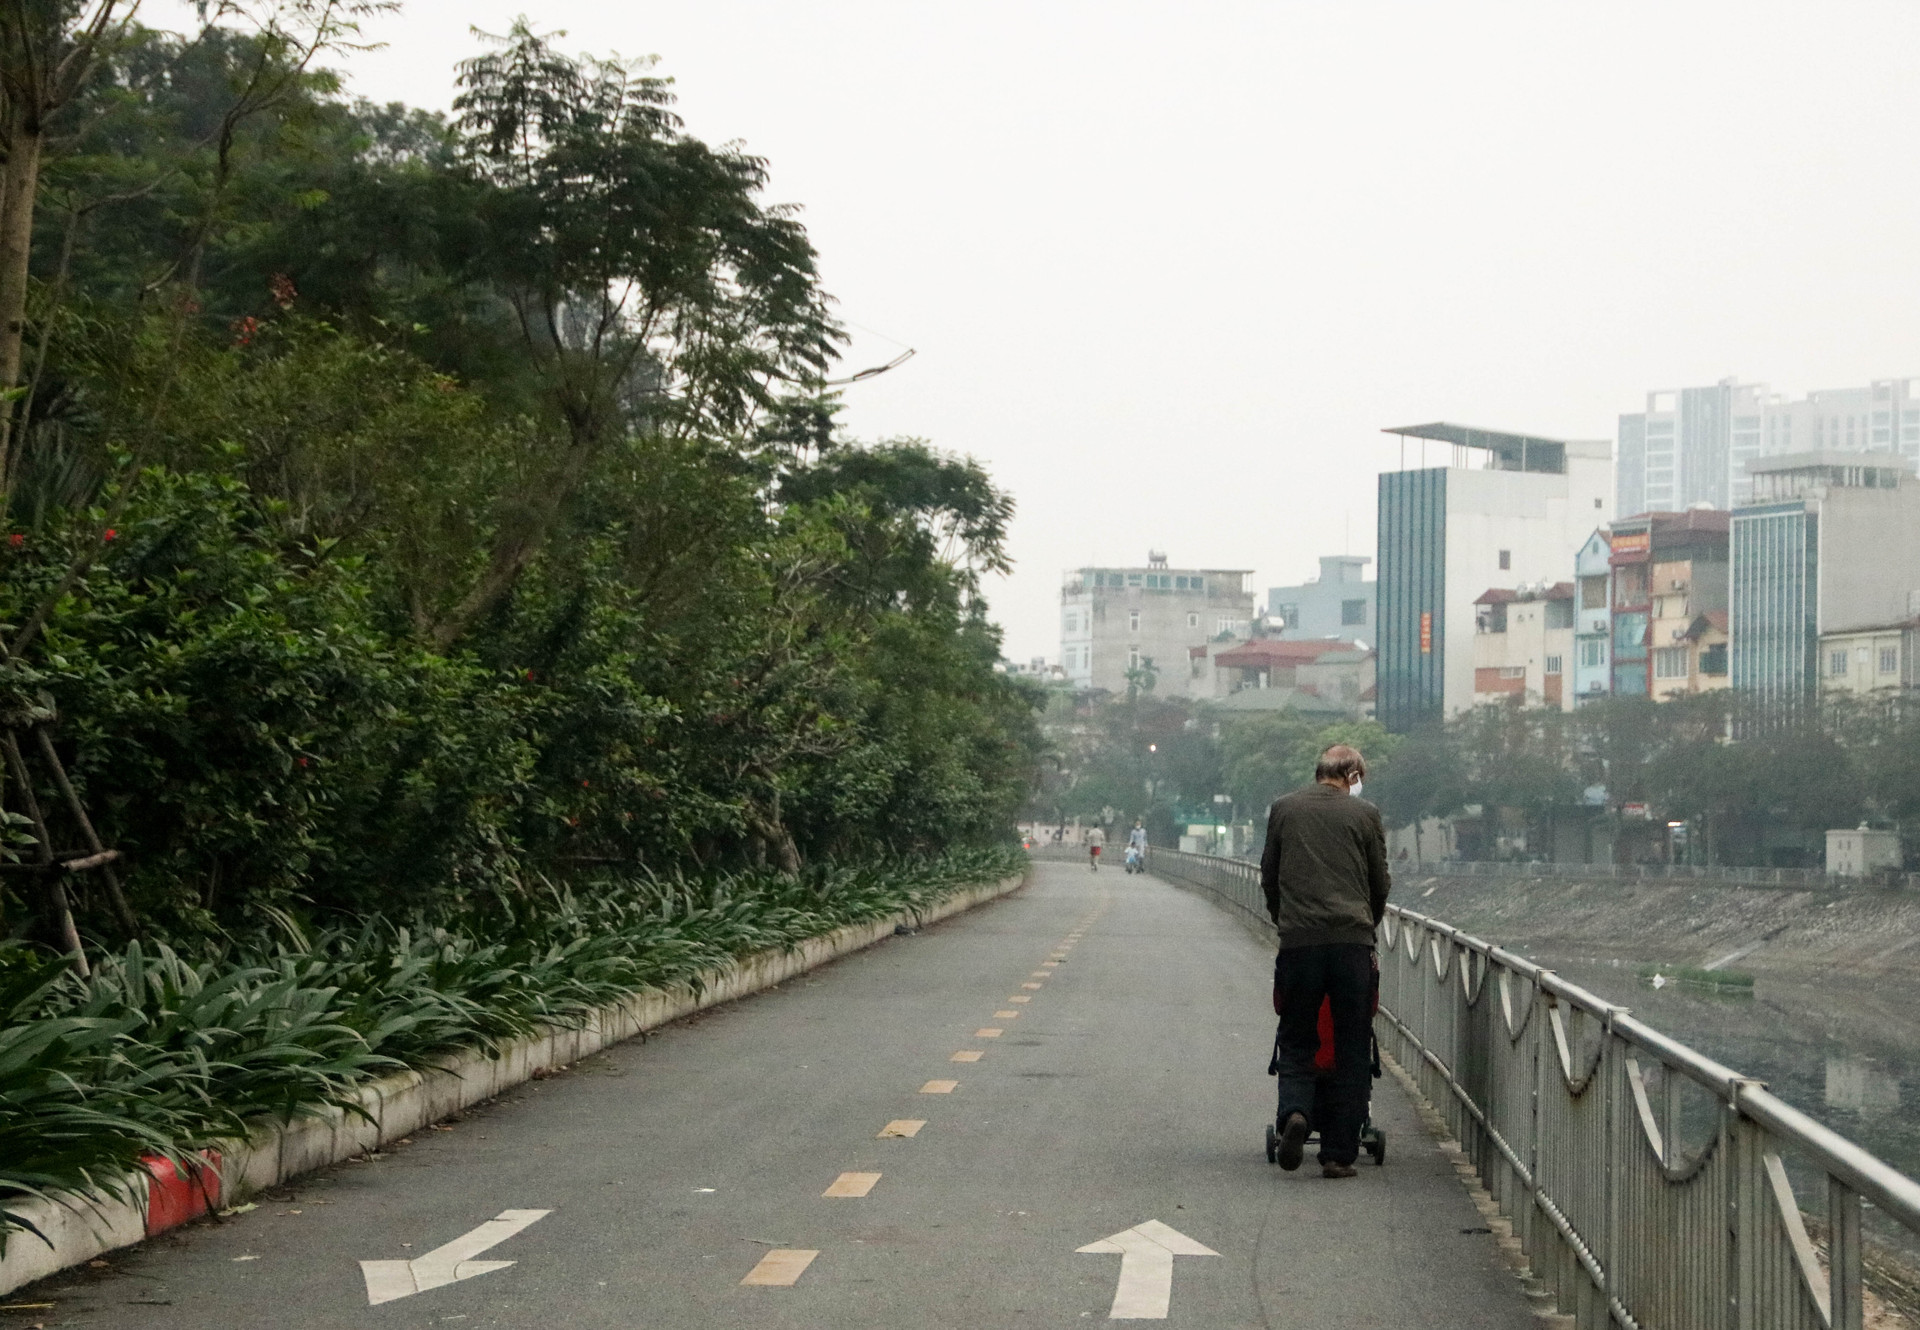 Chùm ảnh: Các tụ điểm công cộng tại Hà Nội dần trở nên đông đúc sau một tuần thực hiện cách ly xã hội - Ảnh 10.